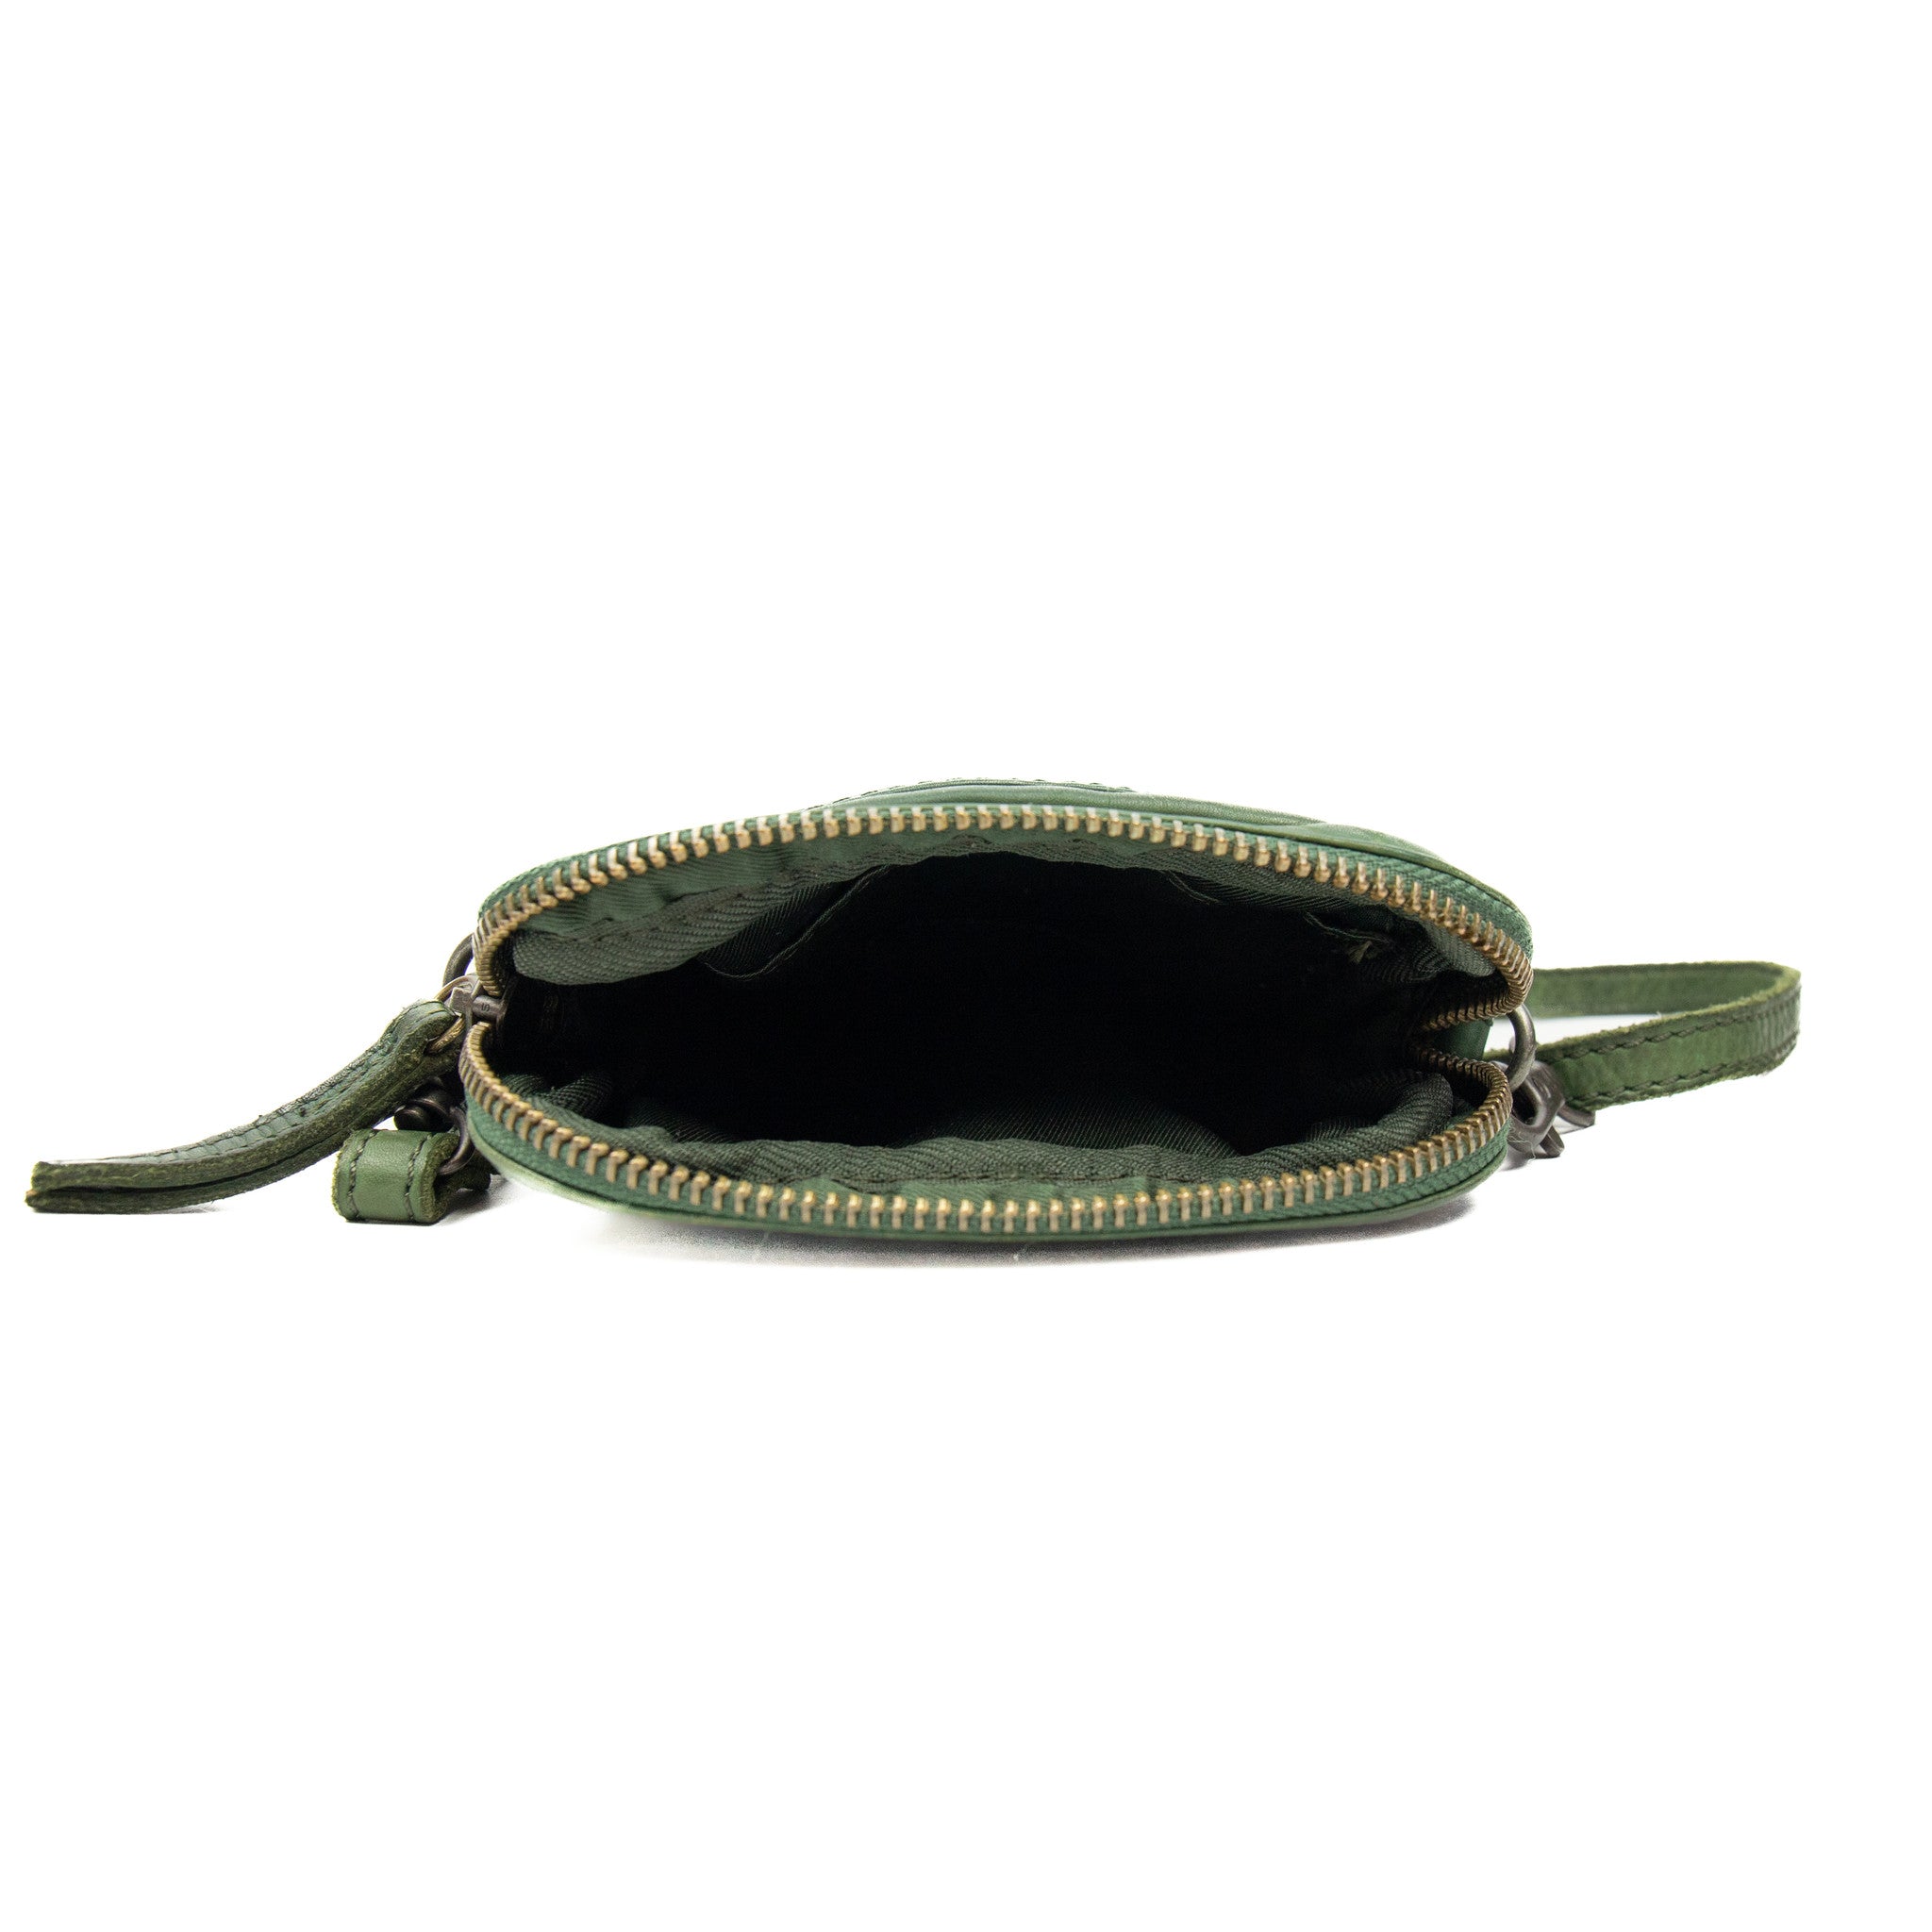 Shoulder bag 'Vikas' olive green - CL 3701